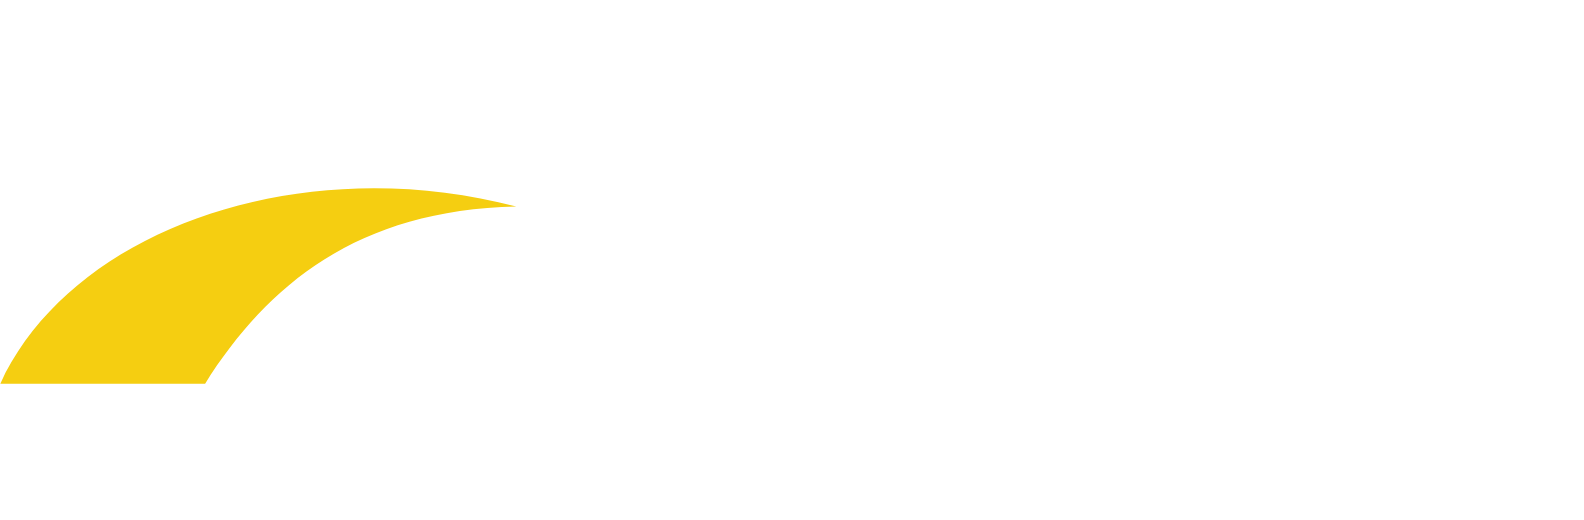 Emera logo large for dark backgrounds (transparent PNG)